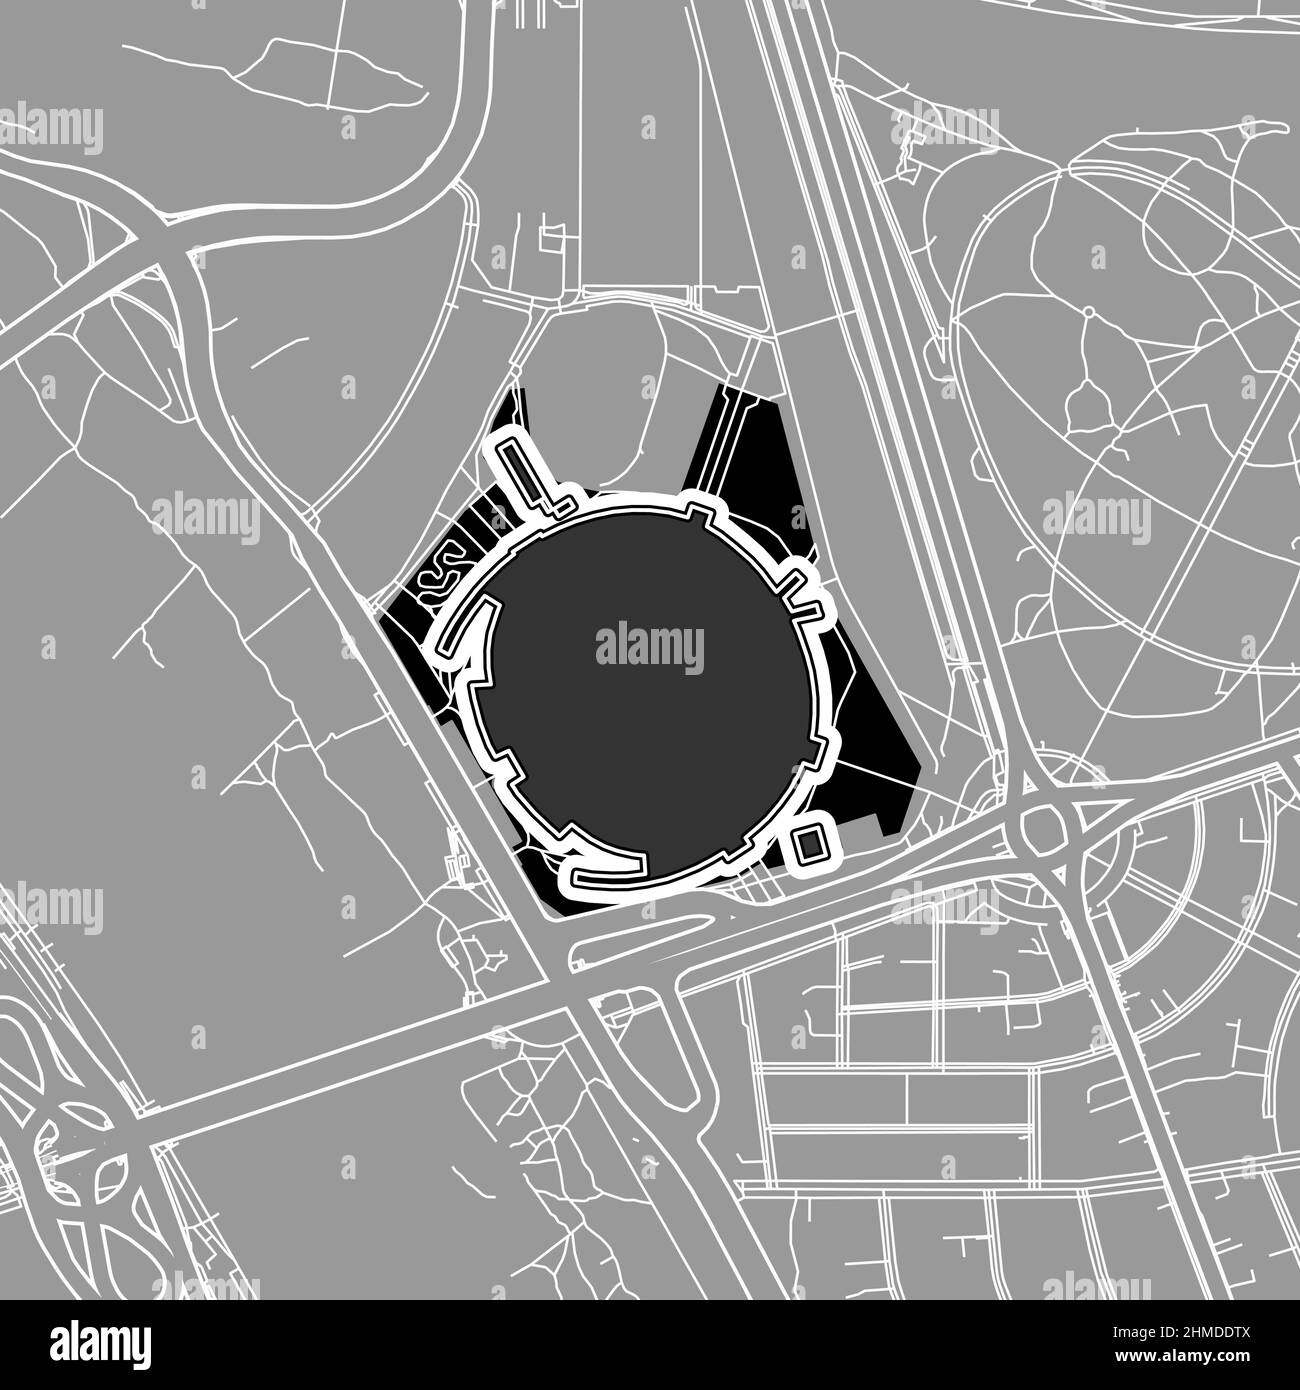 Varsovia, Estadio MLB de Béisbol, mapa vectorial del contorno. El mapa del estadio de béisbol fue dibujado con áreas blancas y líneas para las carreteras principales y laterales. Ilustración del Vector